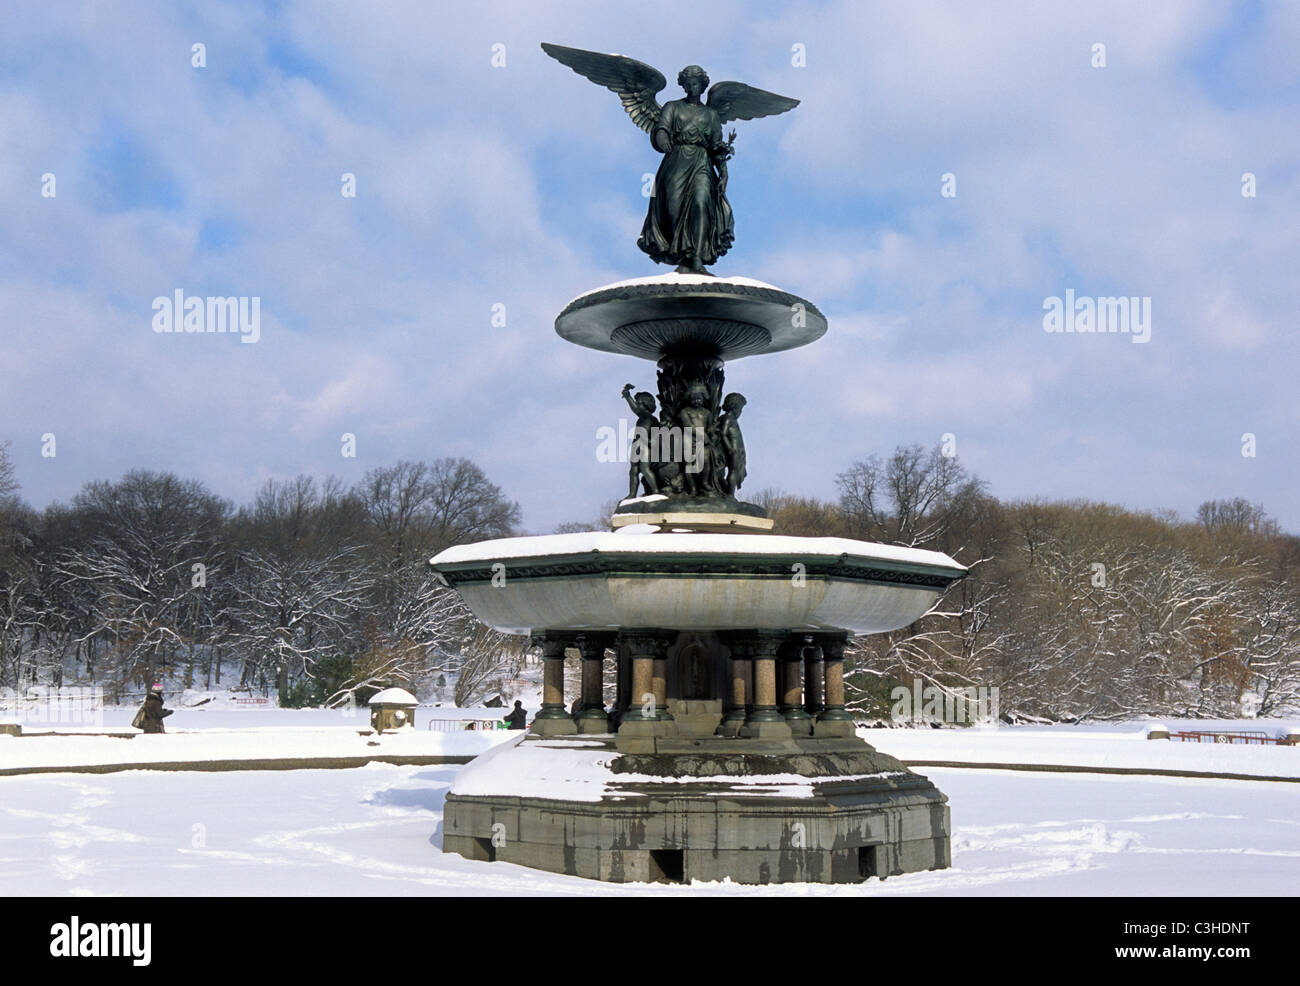 New York City Central Park Fontaine Bethesda, ou Fontaine Angel of the Waters sur la terrasse Bethesda. Hiver après une tempête de neige. Scène de neige. Banque D'Images